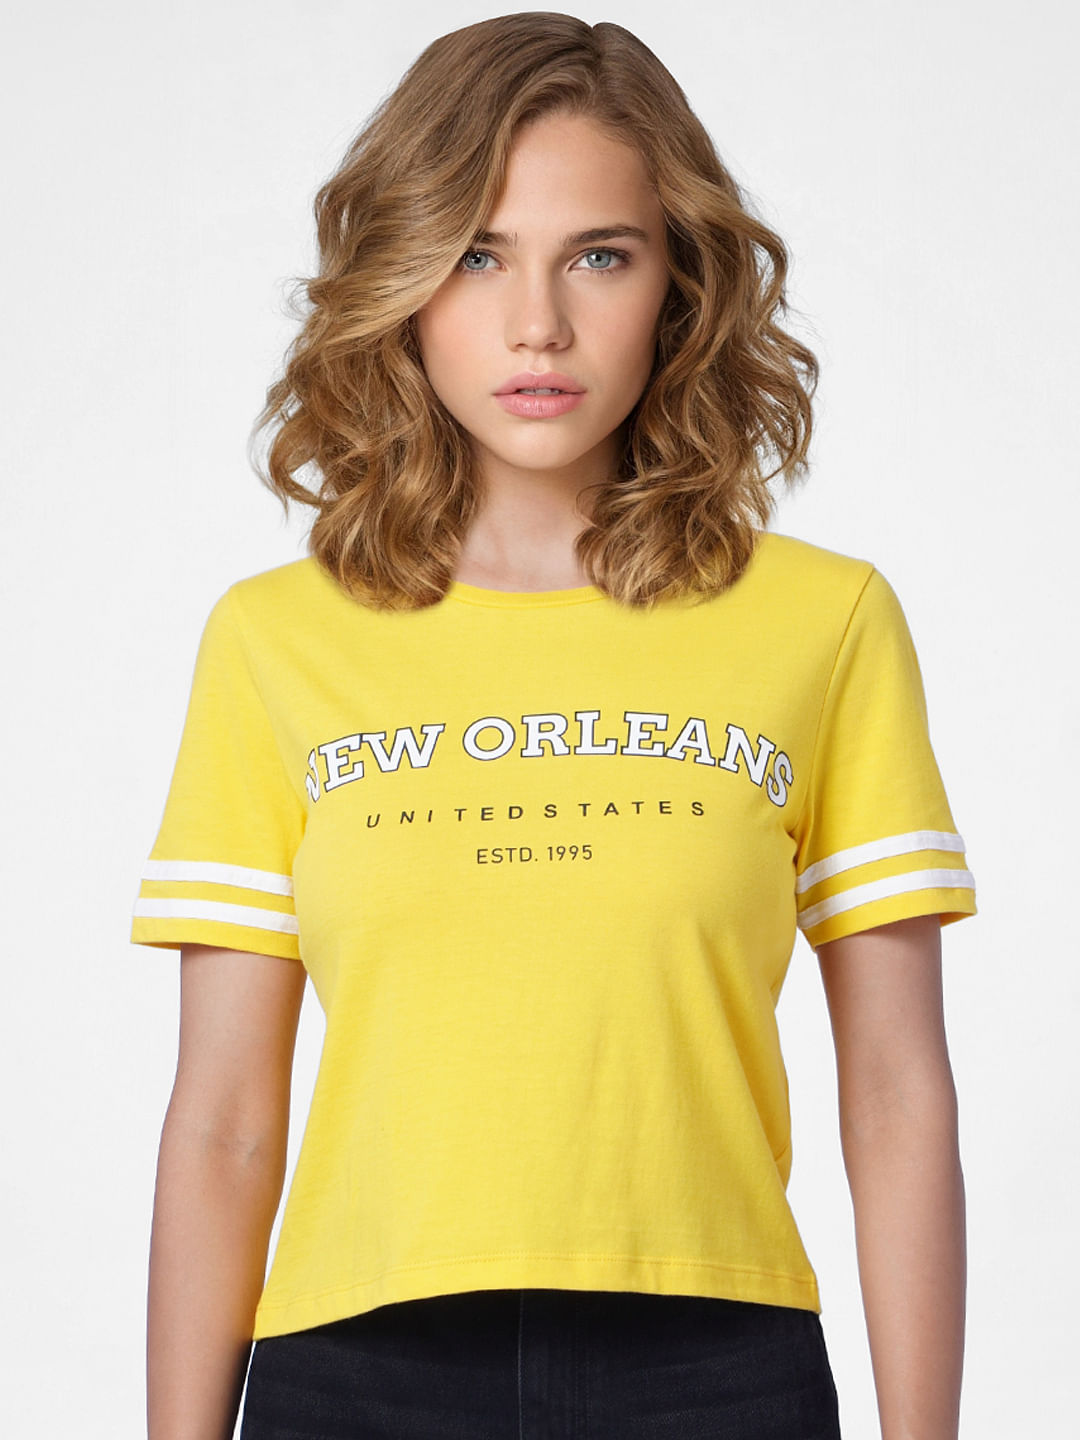 WOMEN FASHION Shirts & T-shirts Casual VILA T-shirt discount 56% Brown L 